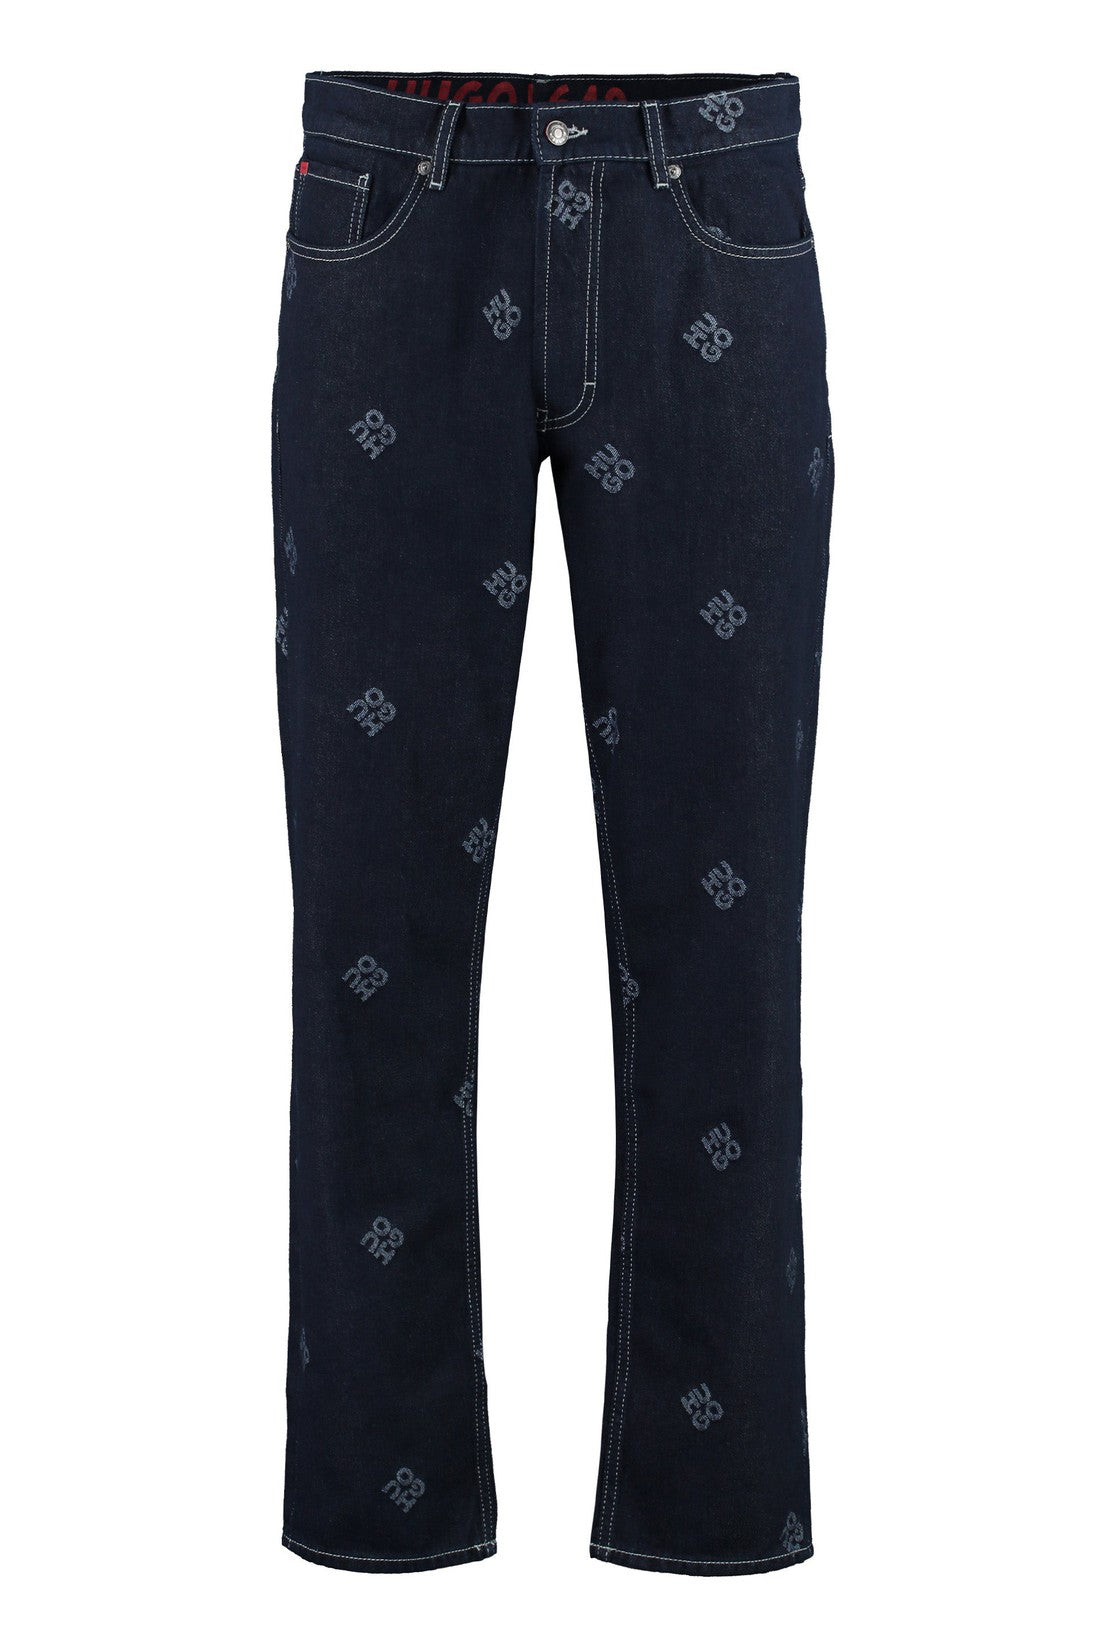 BOSS-OUTLET-SALE-5-pocket straight-leg jeans-ARCHIVIST